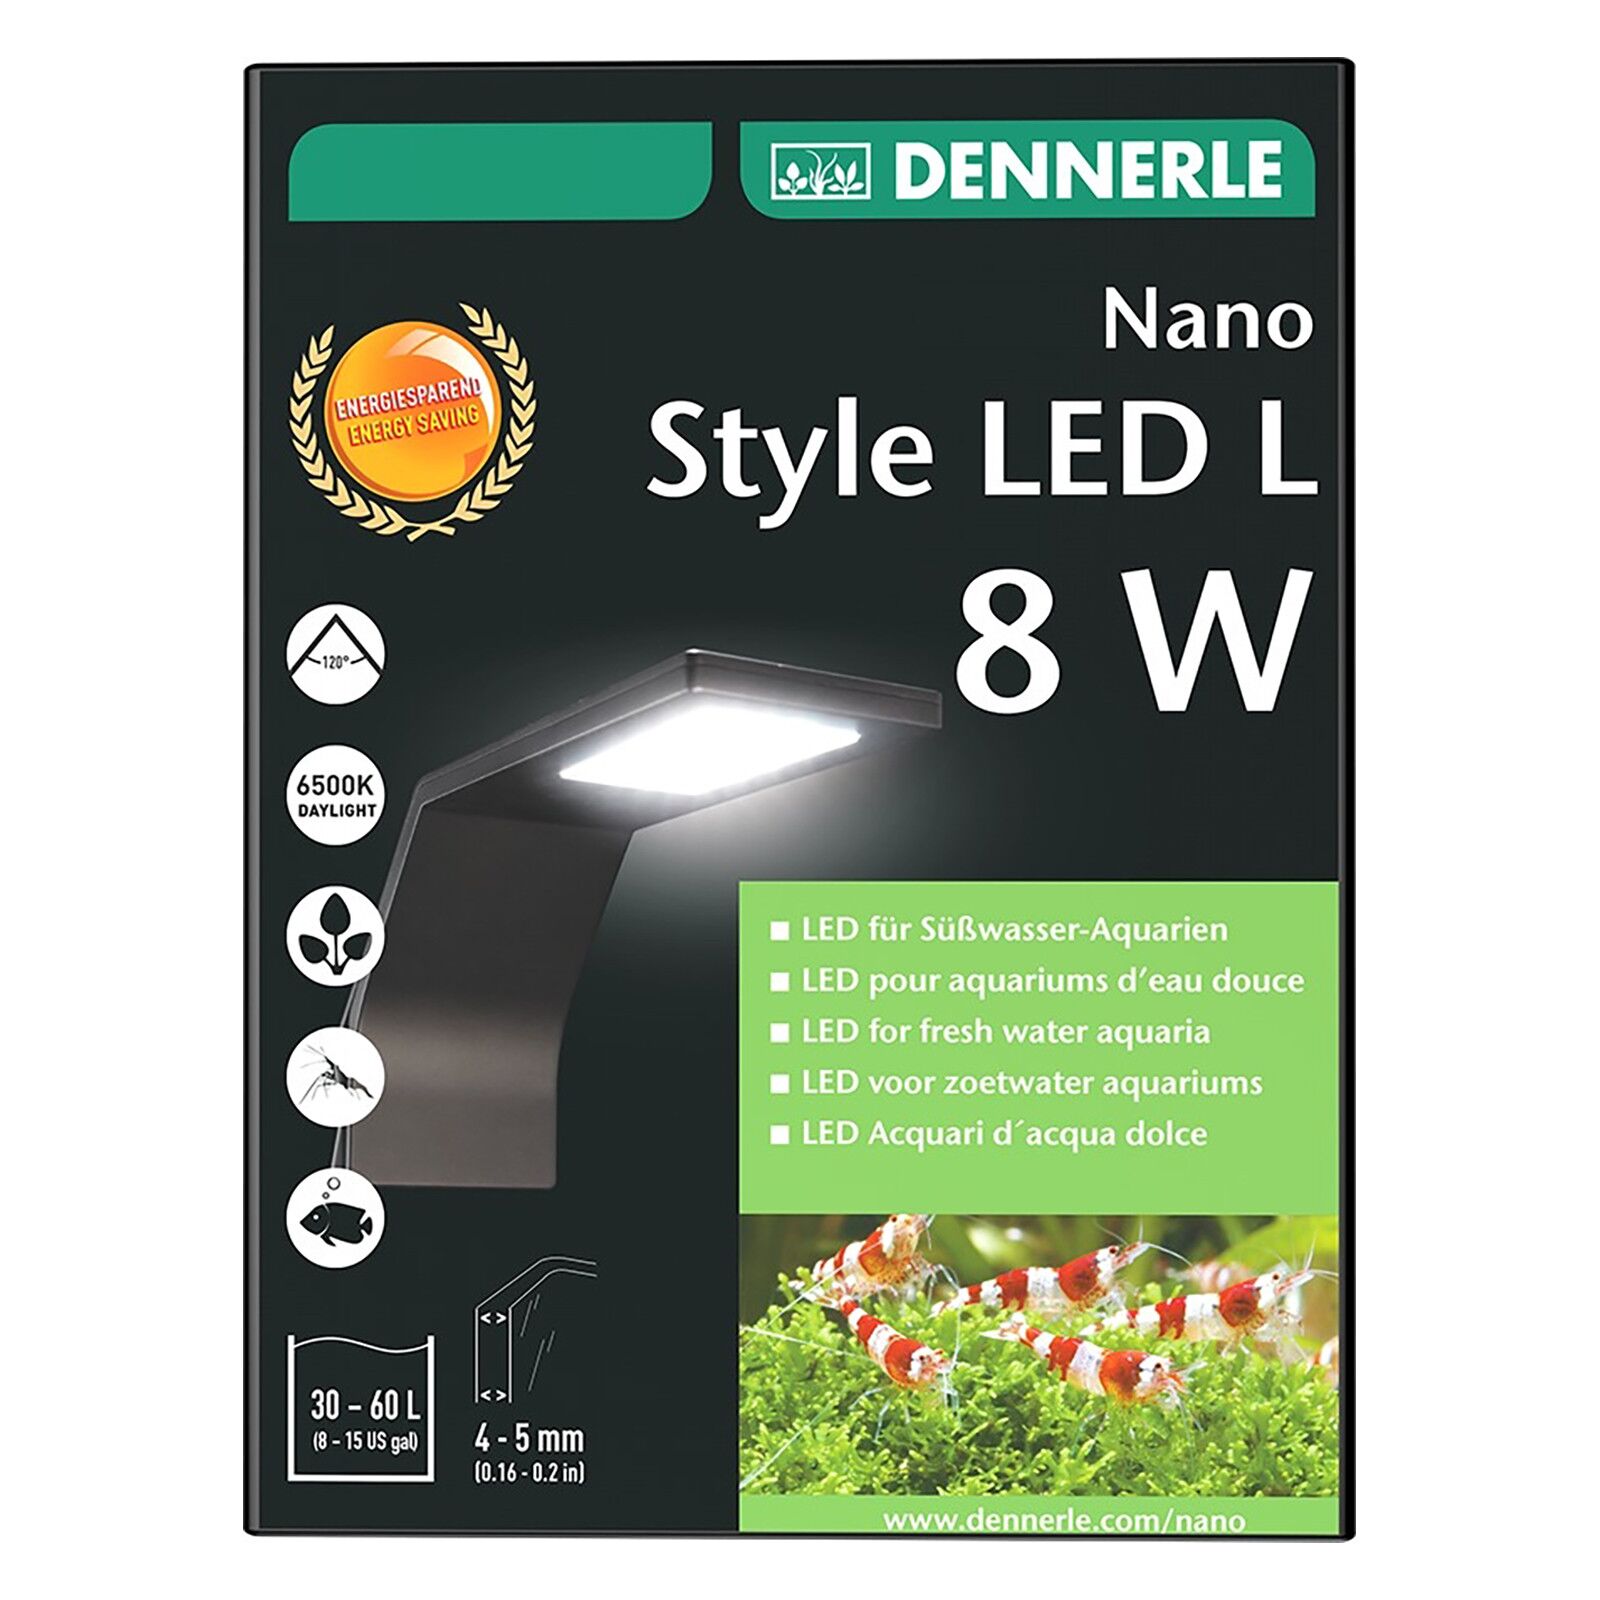 Dennerle - Nano Style LED